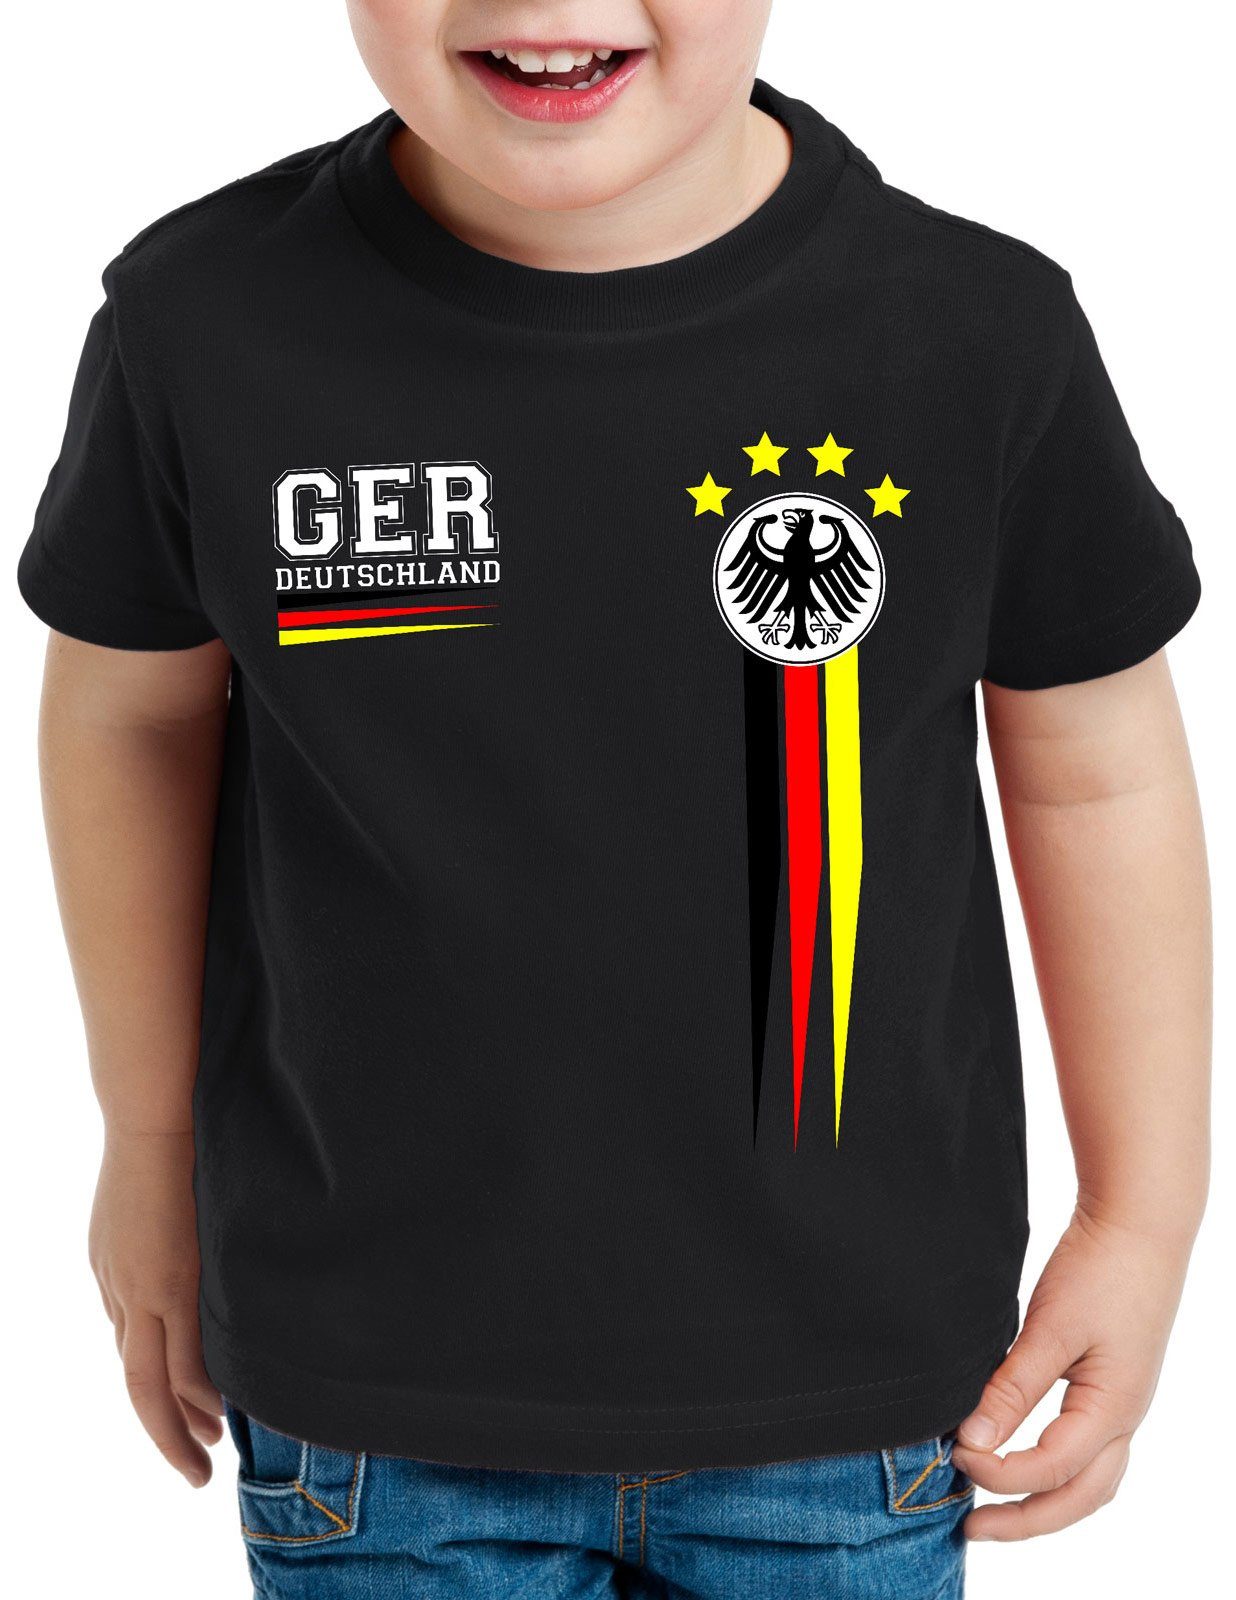 T-Shirt Bitte Jogi stell mich auf für Männer Fußball Fanartikel 2016 Deutschland 